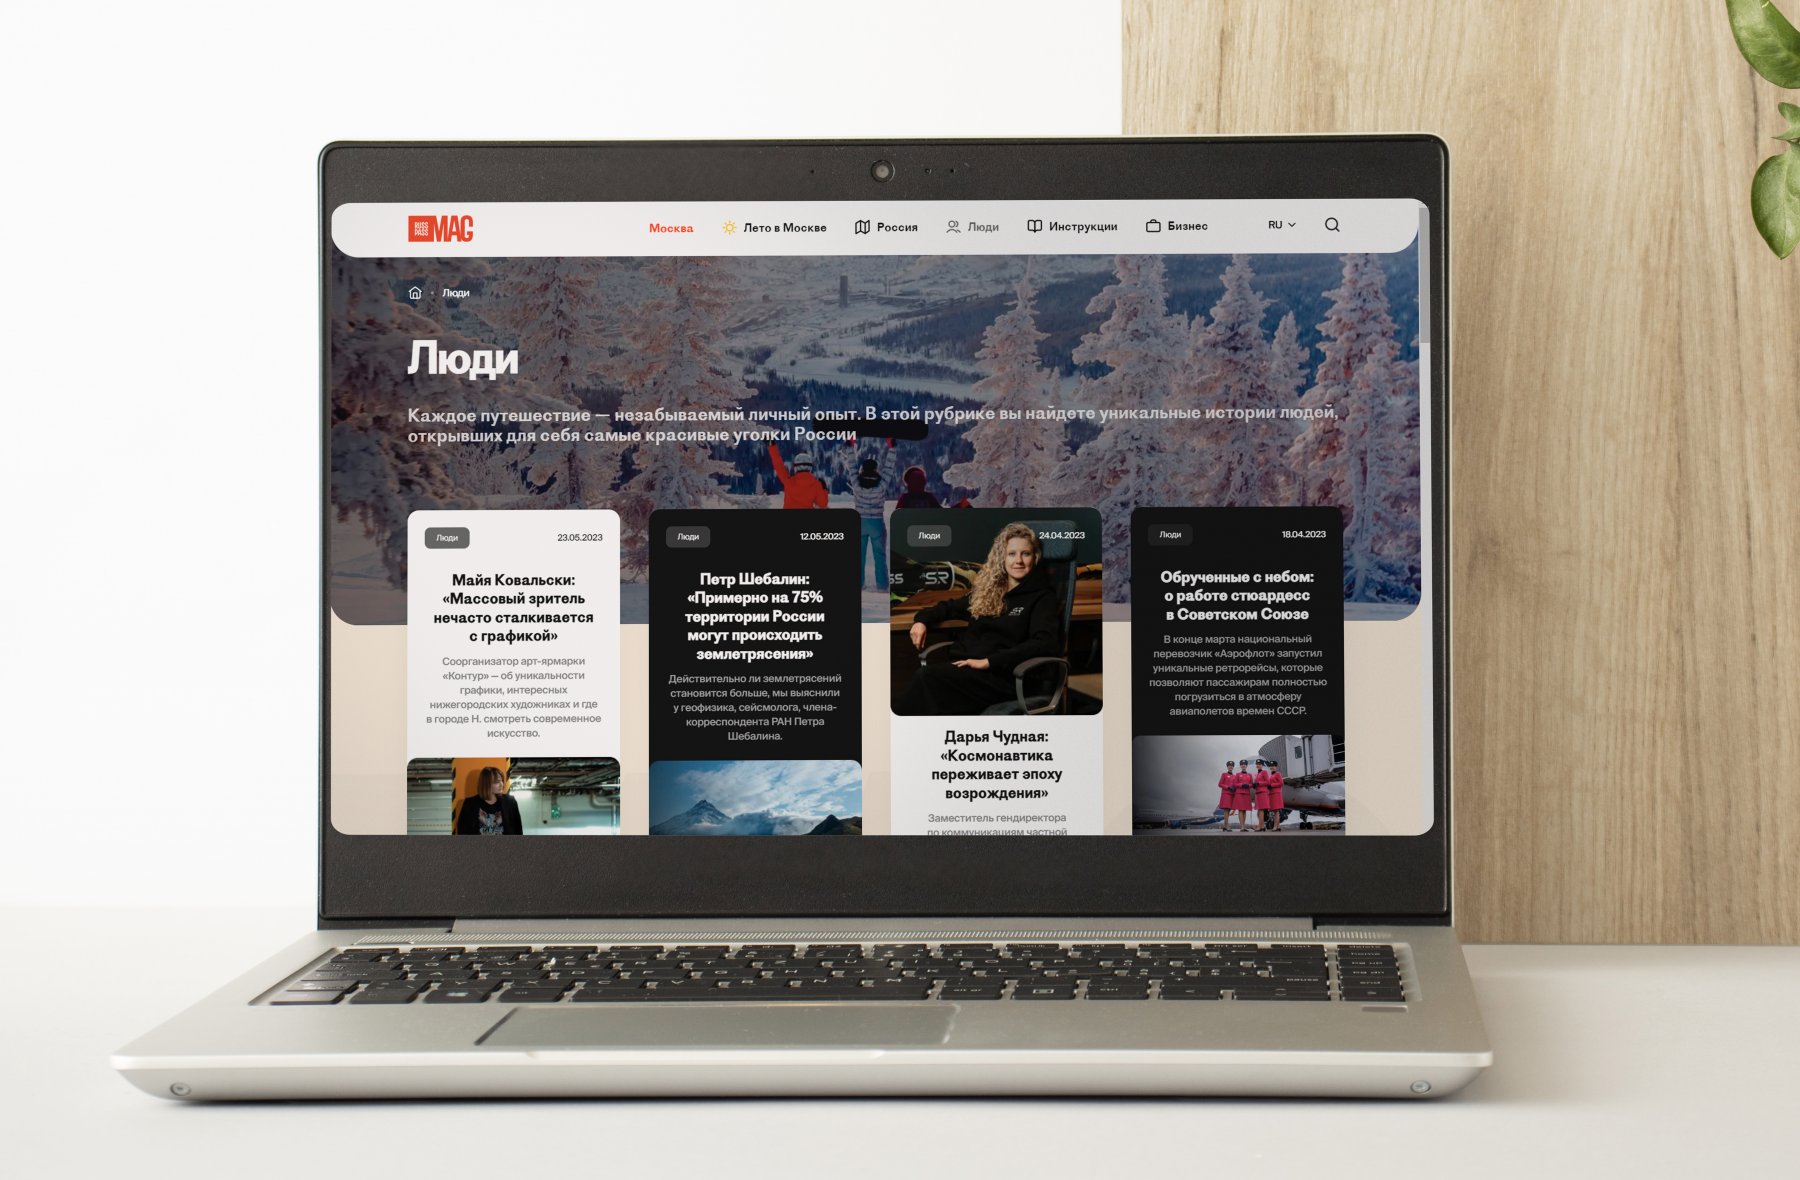 Онлайн-сервис Russpass обновил сетевой-журнал о туризме в России